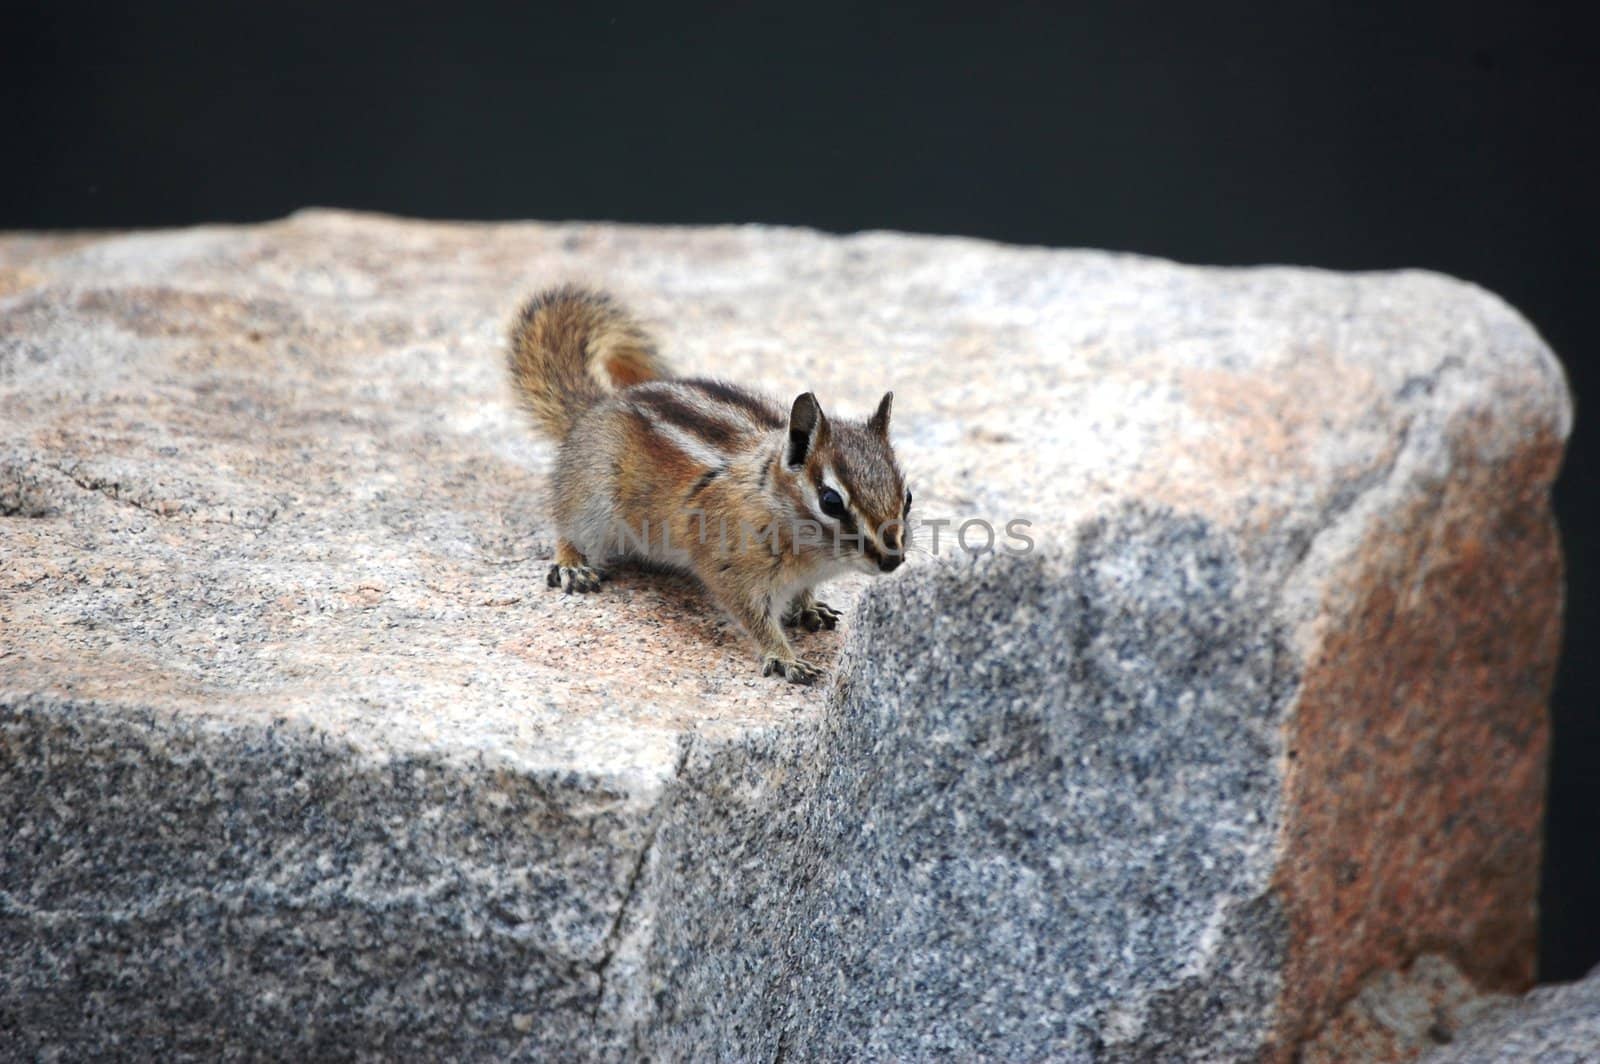 Chipmunk poses on boulder